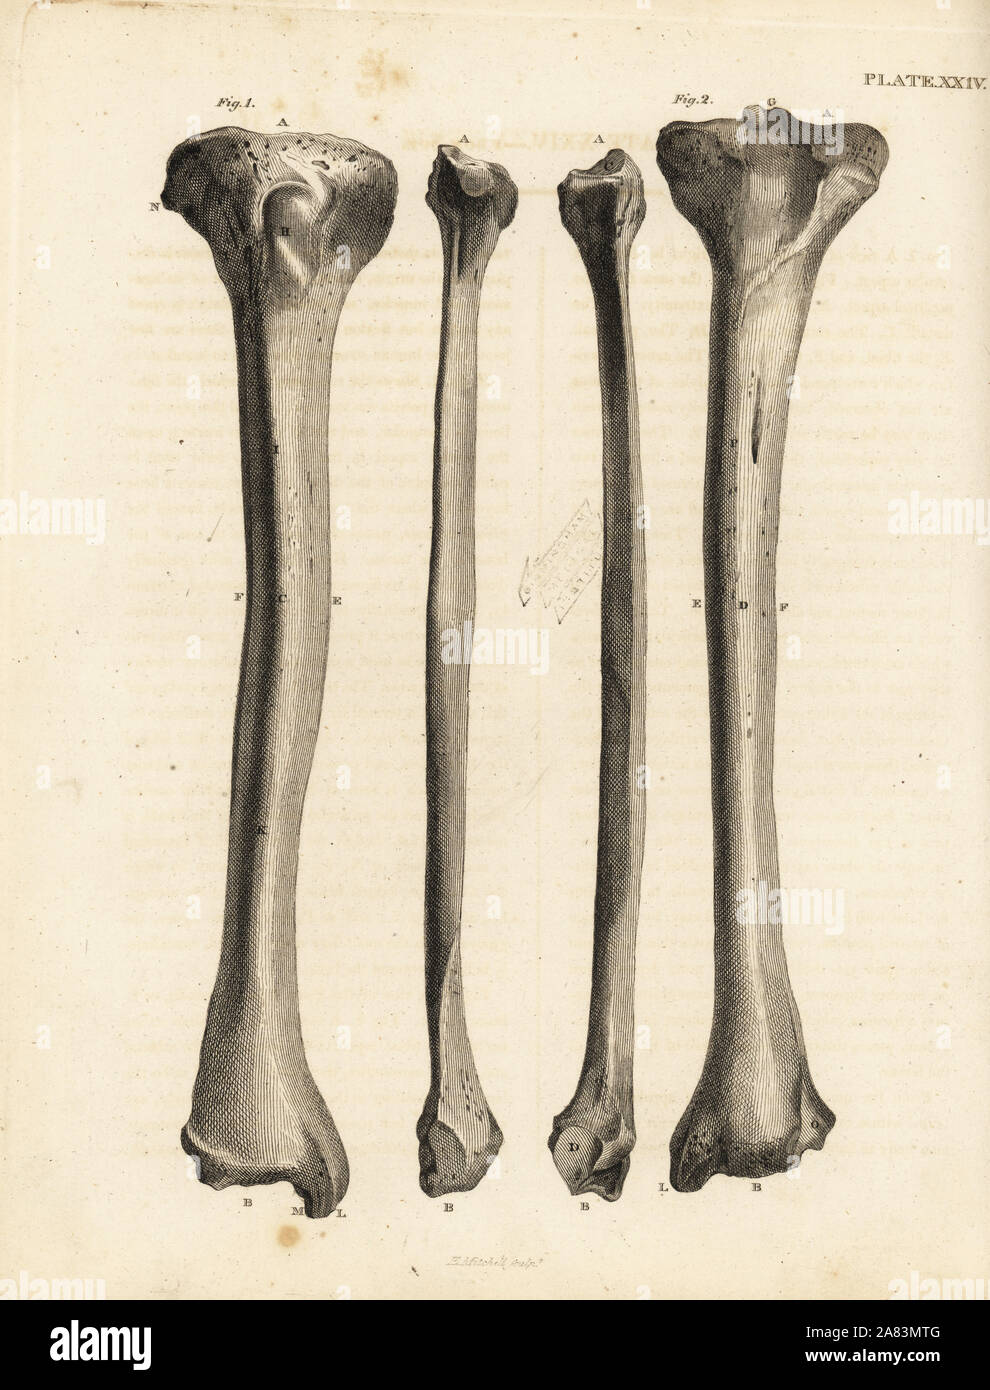 Blick auf das schienbein Knochen im menschlichen Bein. Kupferstich von Edward Mitchell nach einem anatomischen Illustration von jean-joseph Sue von John Barclay ist eine Reihe von Stichen des menschlichen Skeletts, MacLachlan und Stewart, Edinburgh, 1824. Stockfoto